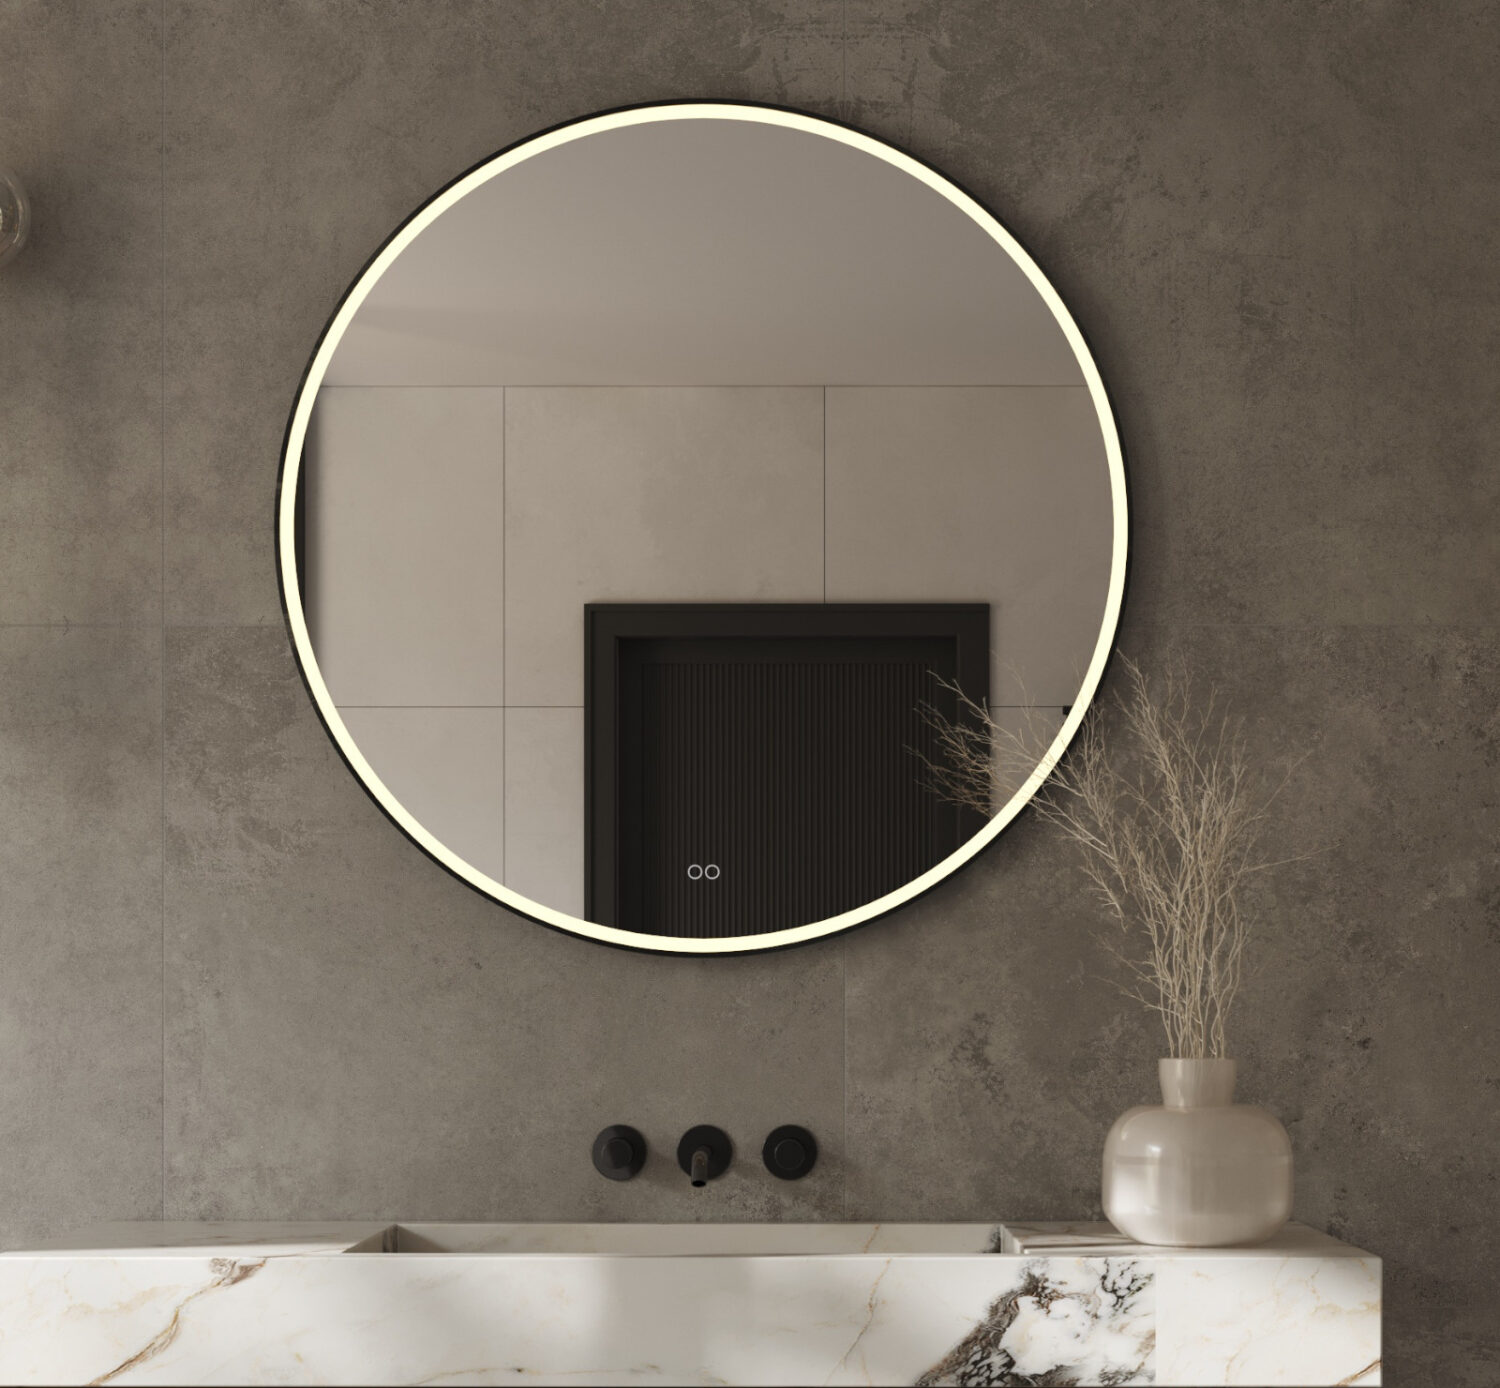 Stijlvolle 100 cm ronde spiegel, uitgevoerd met een mat zwarte frame, verlichting, spiegelverwarming en een dubbele touch schakelaar